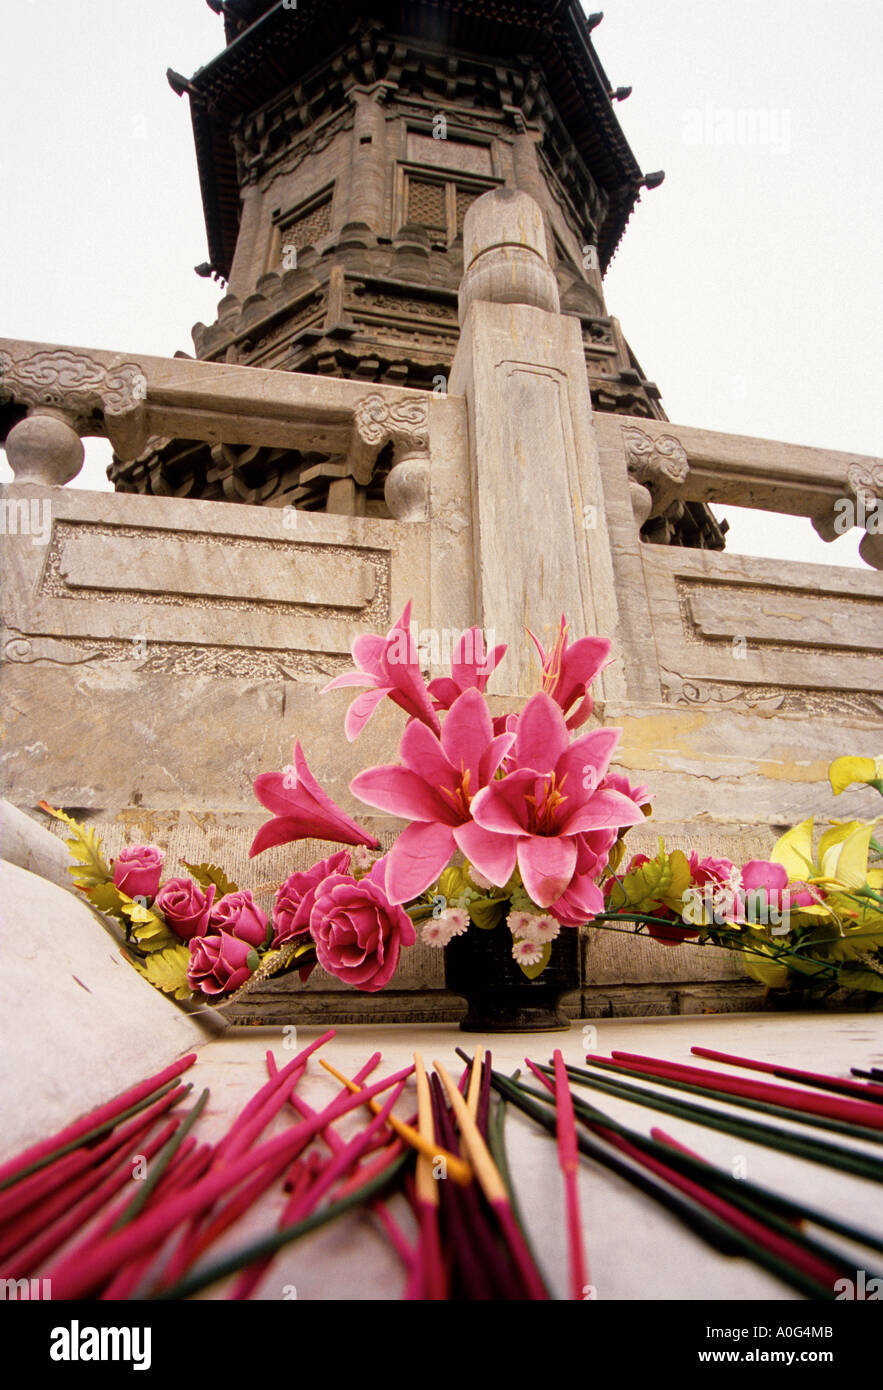 Shijiazhuang, Hebei, China - Blumen und Räucherstäbchen auf Basis der Jin-Dynastie Pagode im Bailin Zen-buddhistischen Tempel Stockfoto